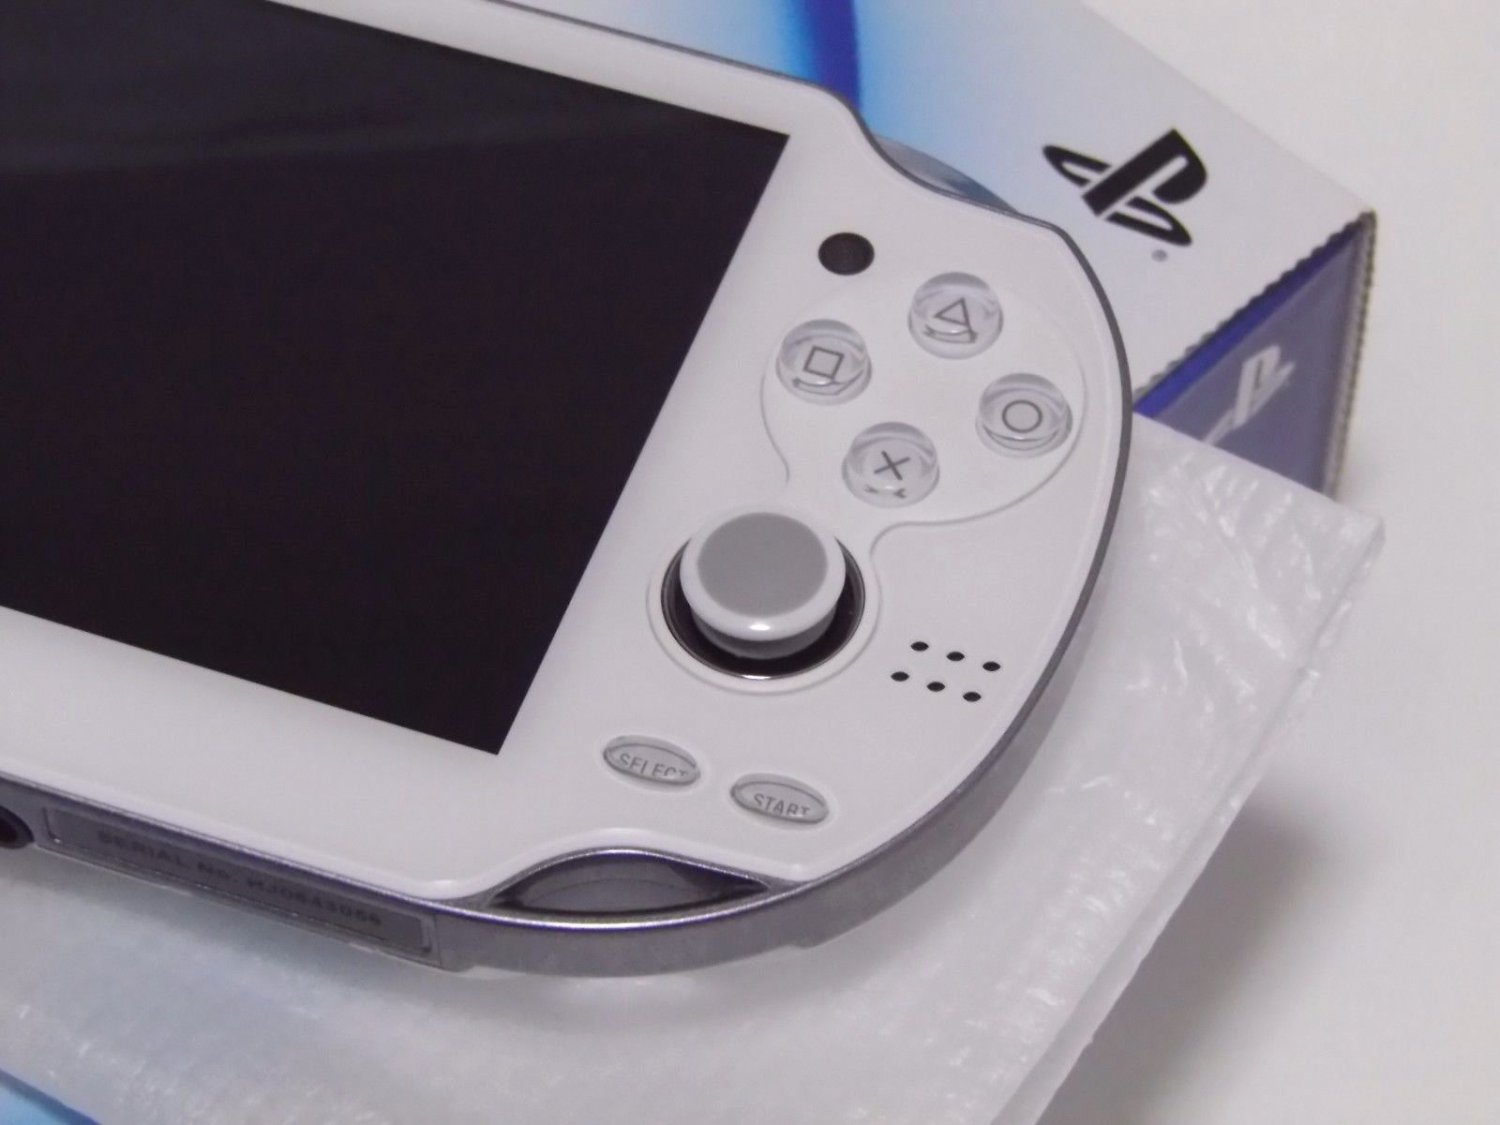 SONY PS Vita PCH-1000 ZA02 White Wi-fi Model Console